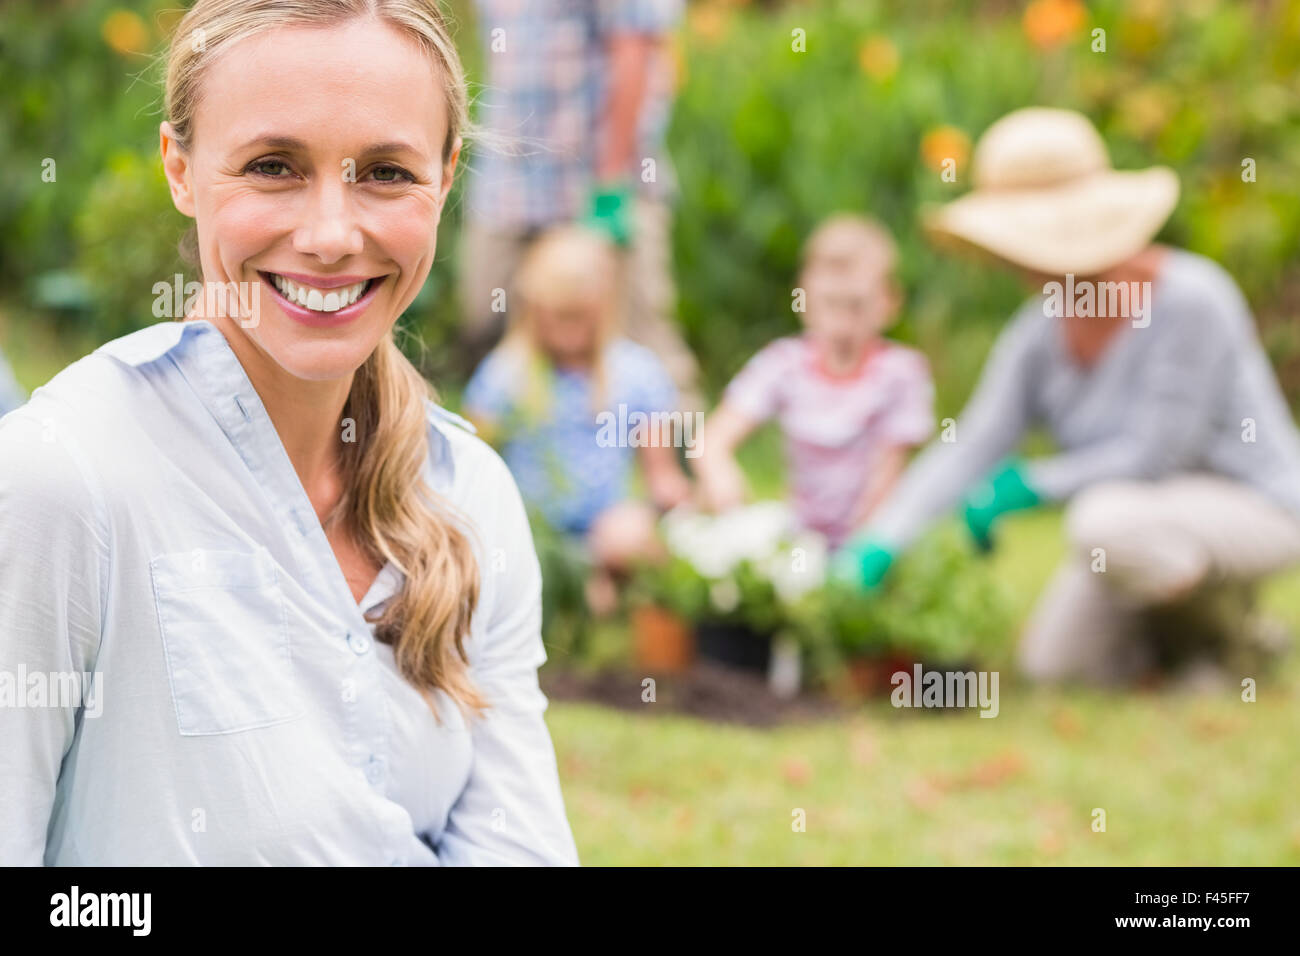 Glückliche Familie Gartenarbeit Stockfoto